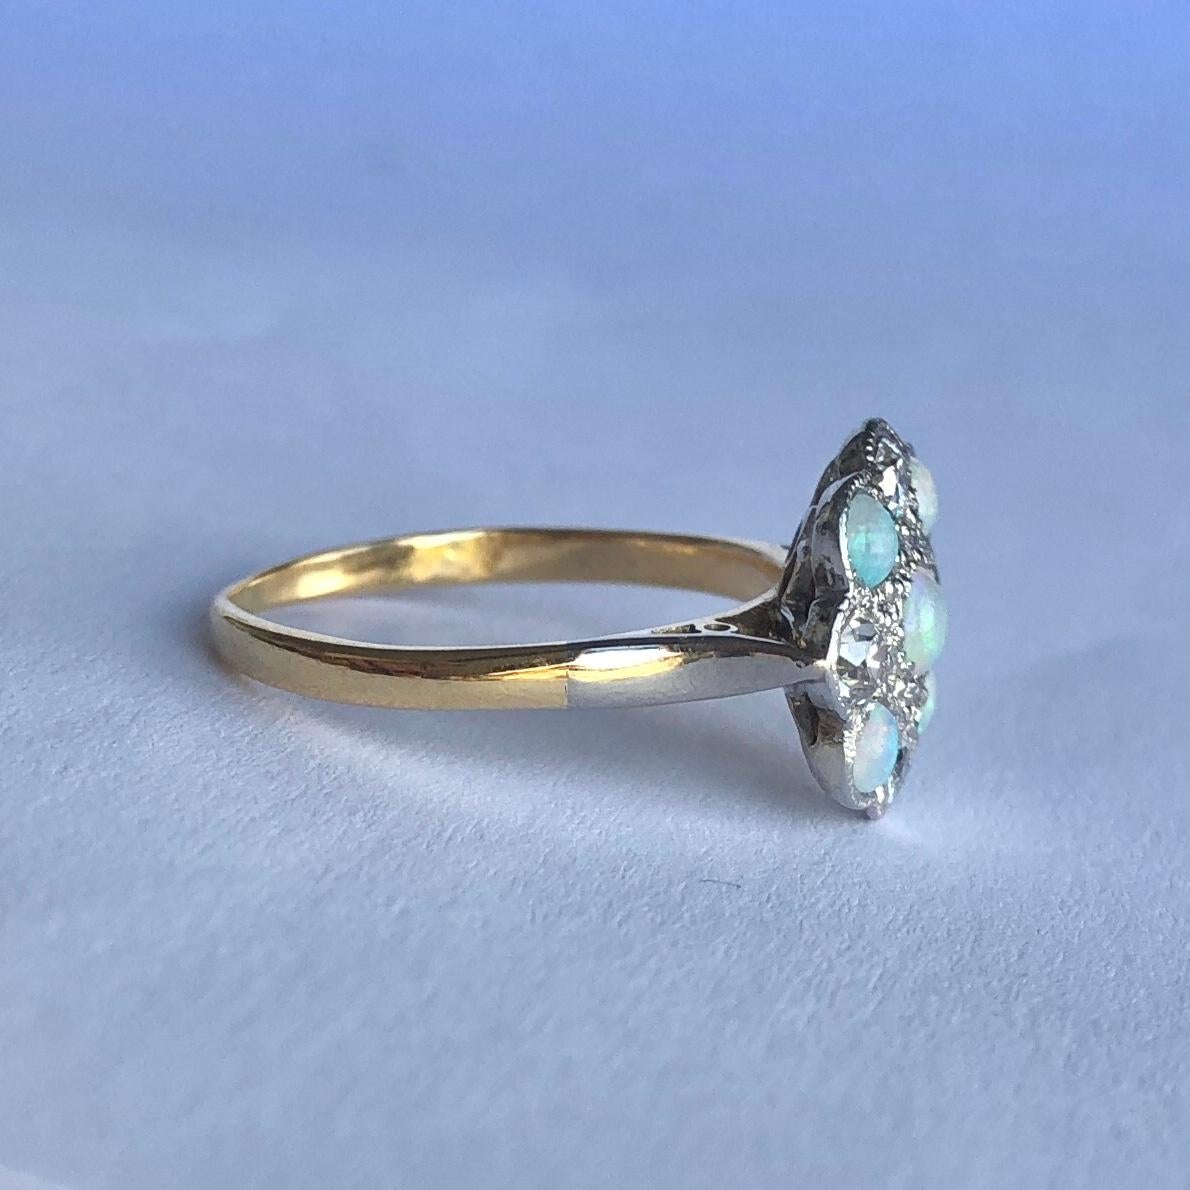 Dieser prächtige Ring enthält fünf Opale und vier Diamanten. Die Diamanten belaufen sich auf insgesamt ca. 60 pts. Alle Steine sind in Platin gefasst und das Band ist aus 18-karätigem Gold modelliert. 

Ring Größe: M 1/2 oder 6 1/2 
Durchmesser der